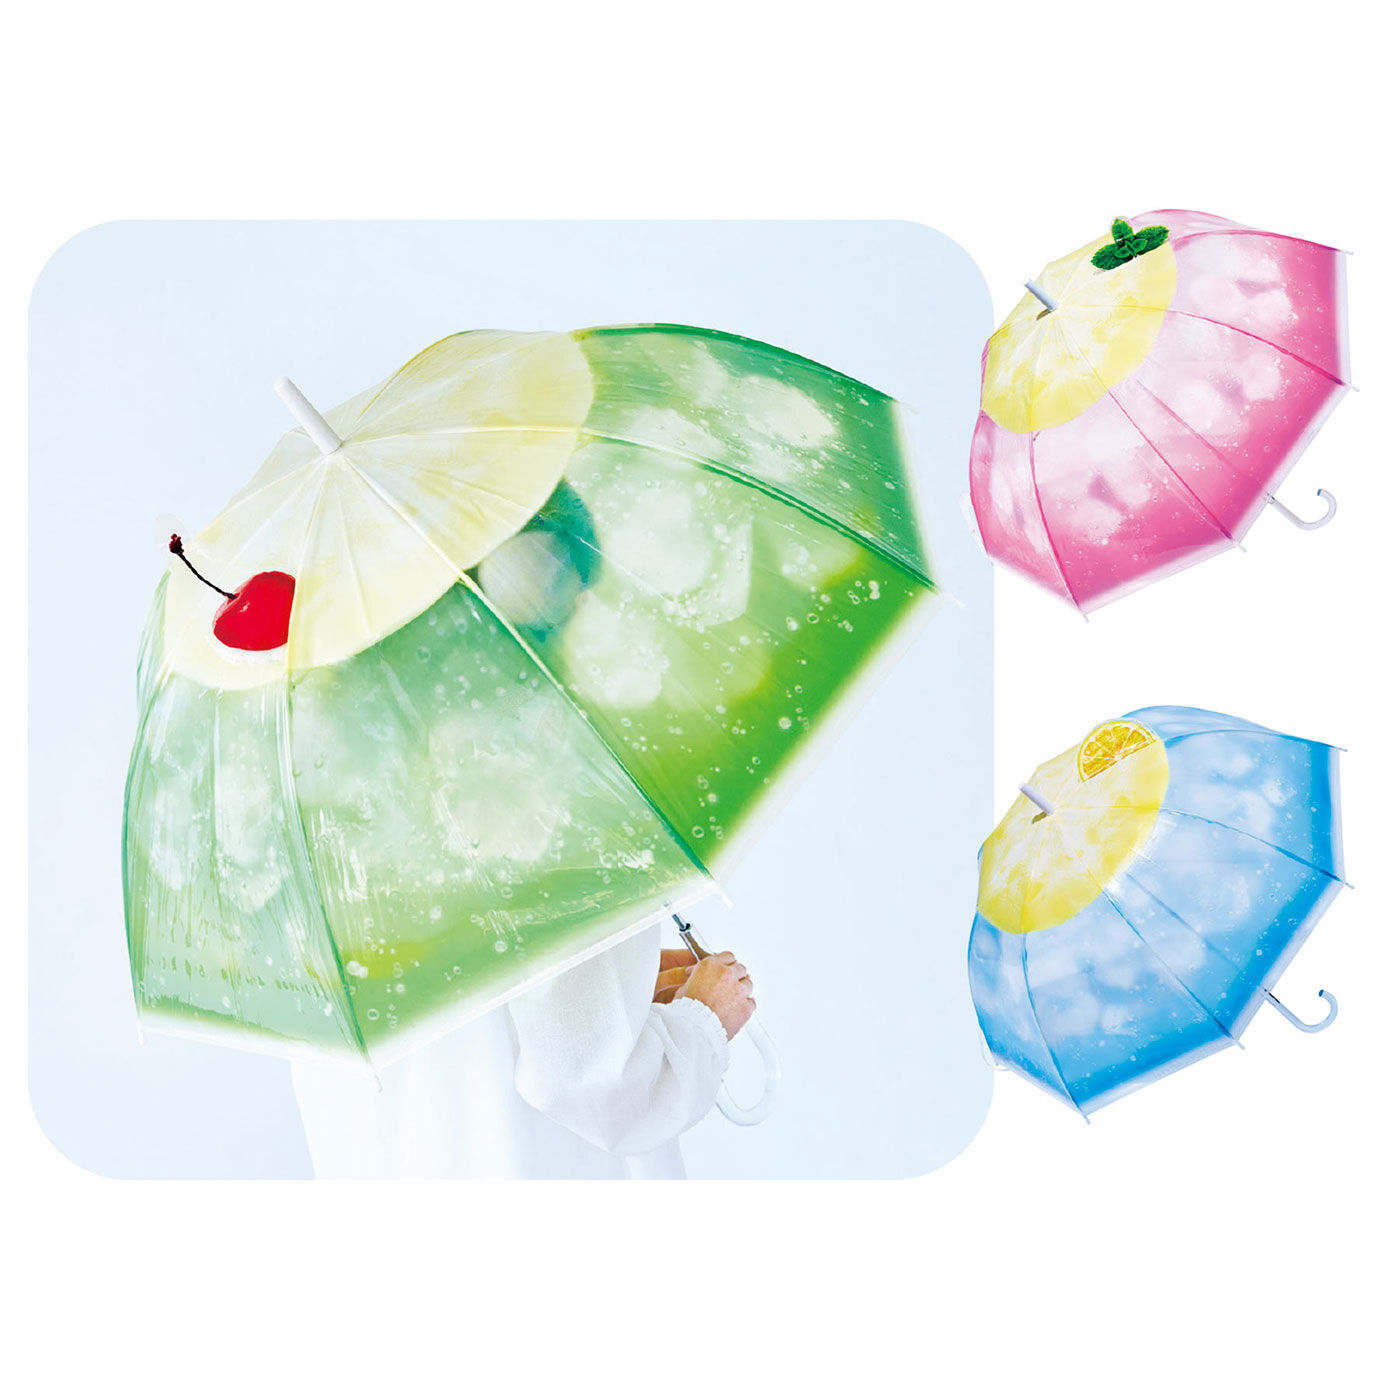 フェリシモの雑貨 Kraso | クリームソーダの傘お出かけ雑貨セット